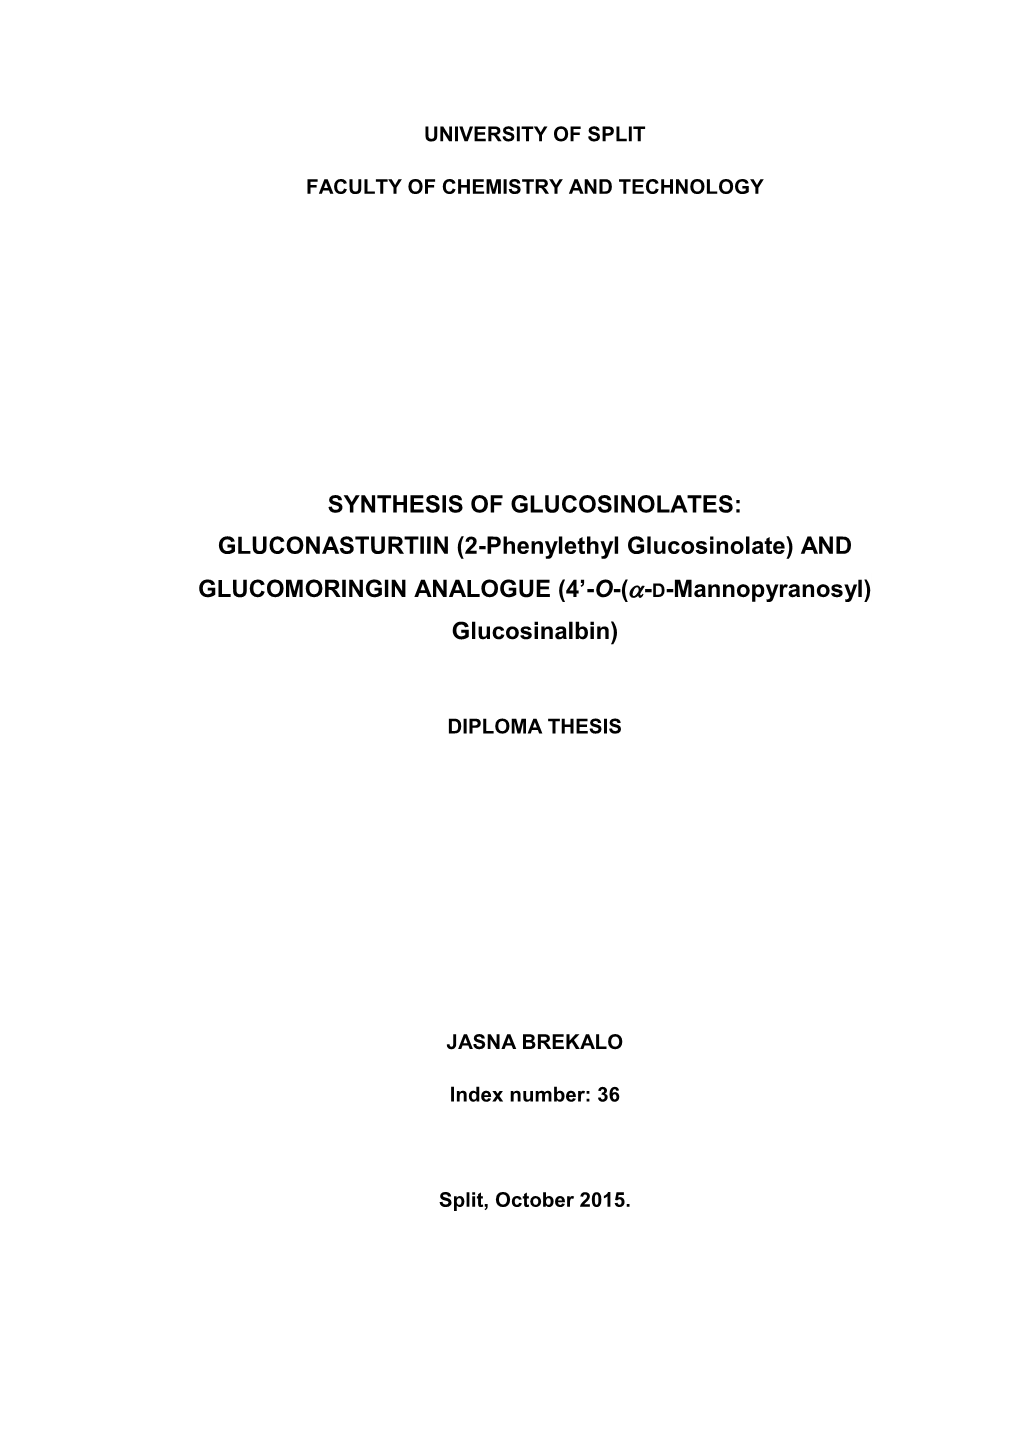 SYNTHESIS of GLUCOSINOLATES: GLUCONASTURTIIN (2-Phenylethyl Glucosinolate) AND